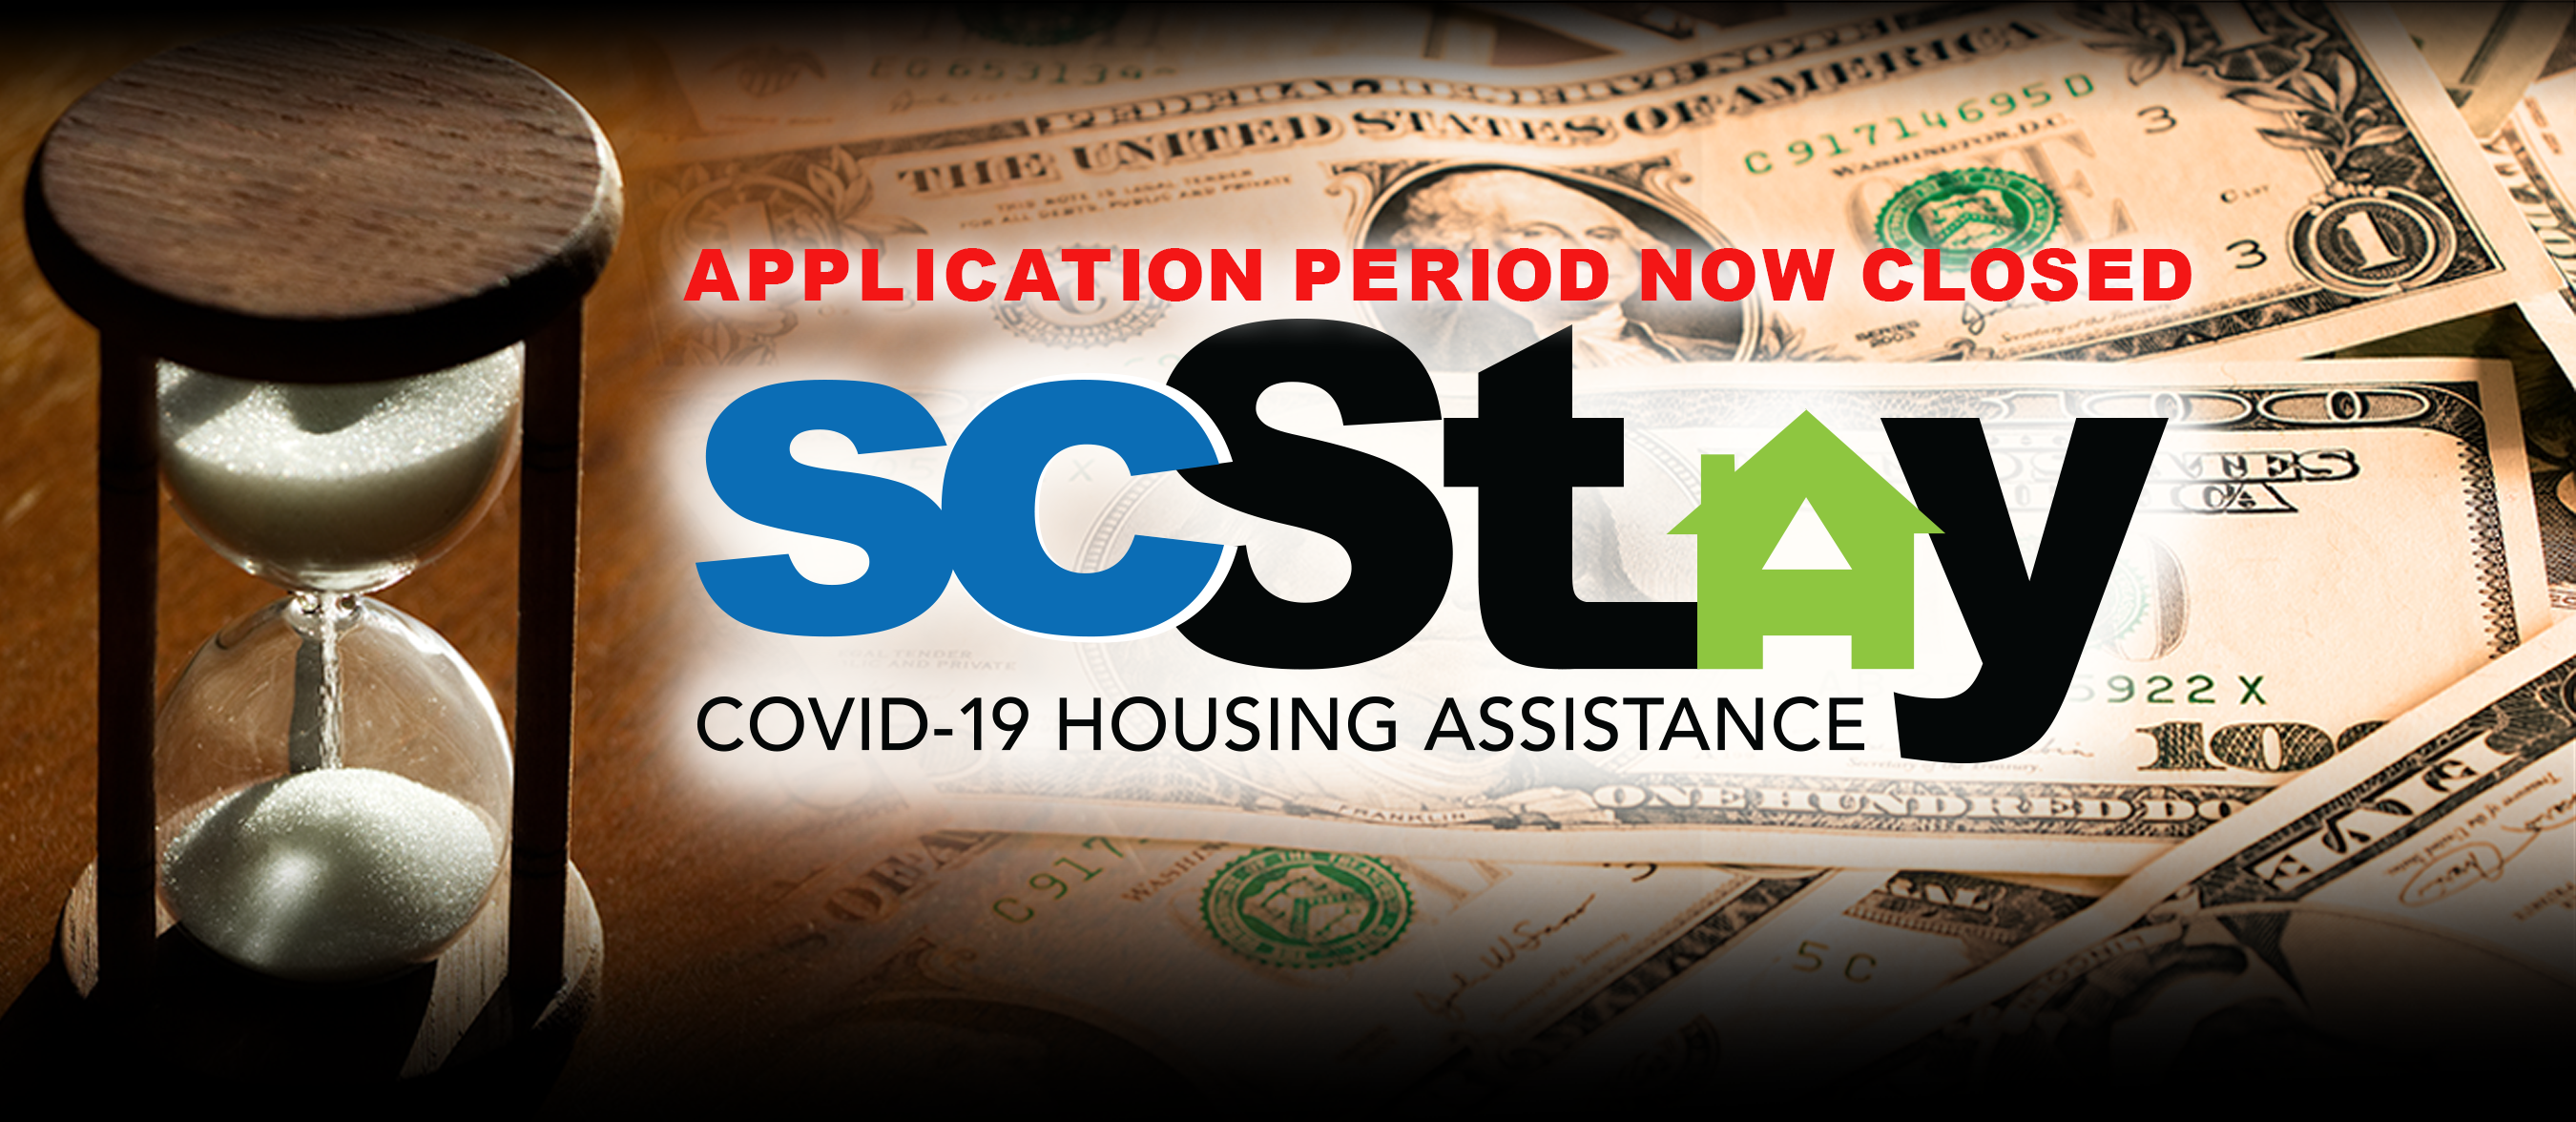 SC Housing assistance program to serve thousands